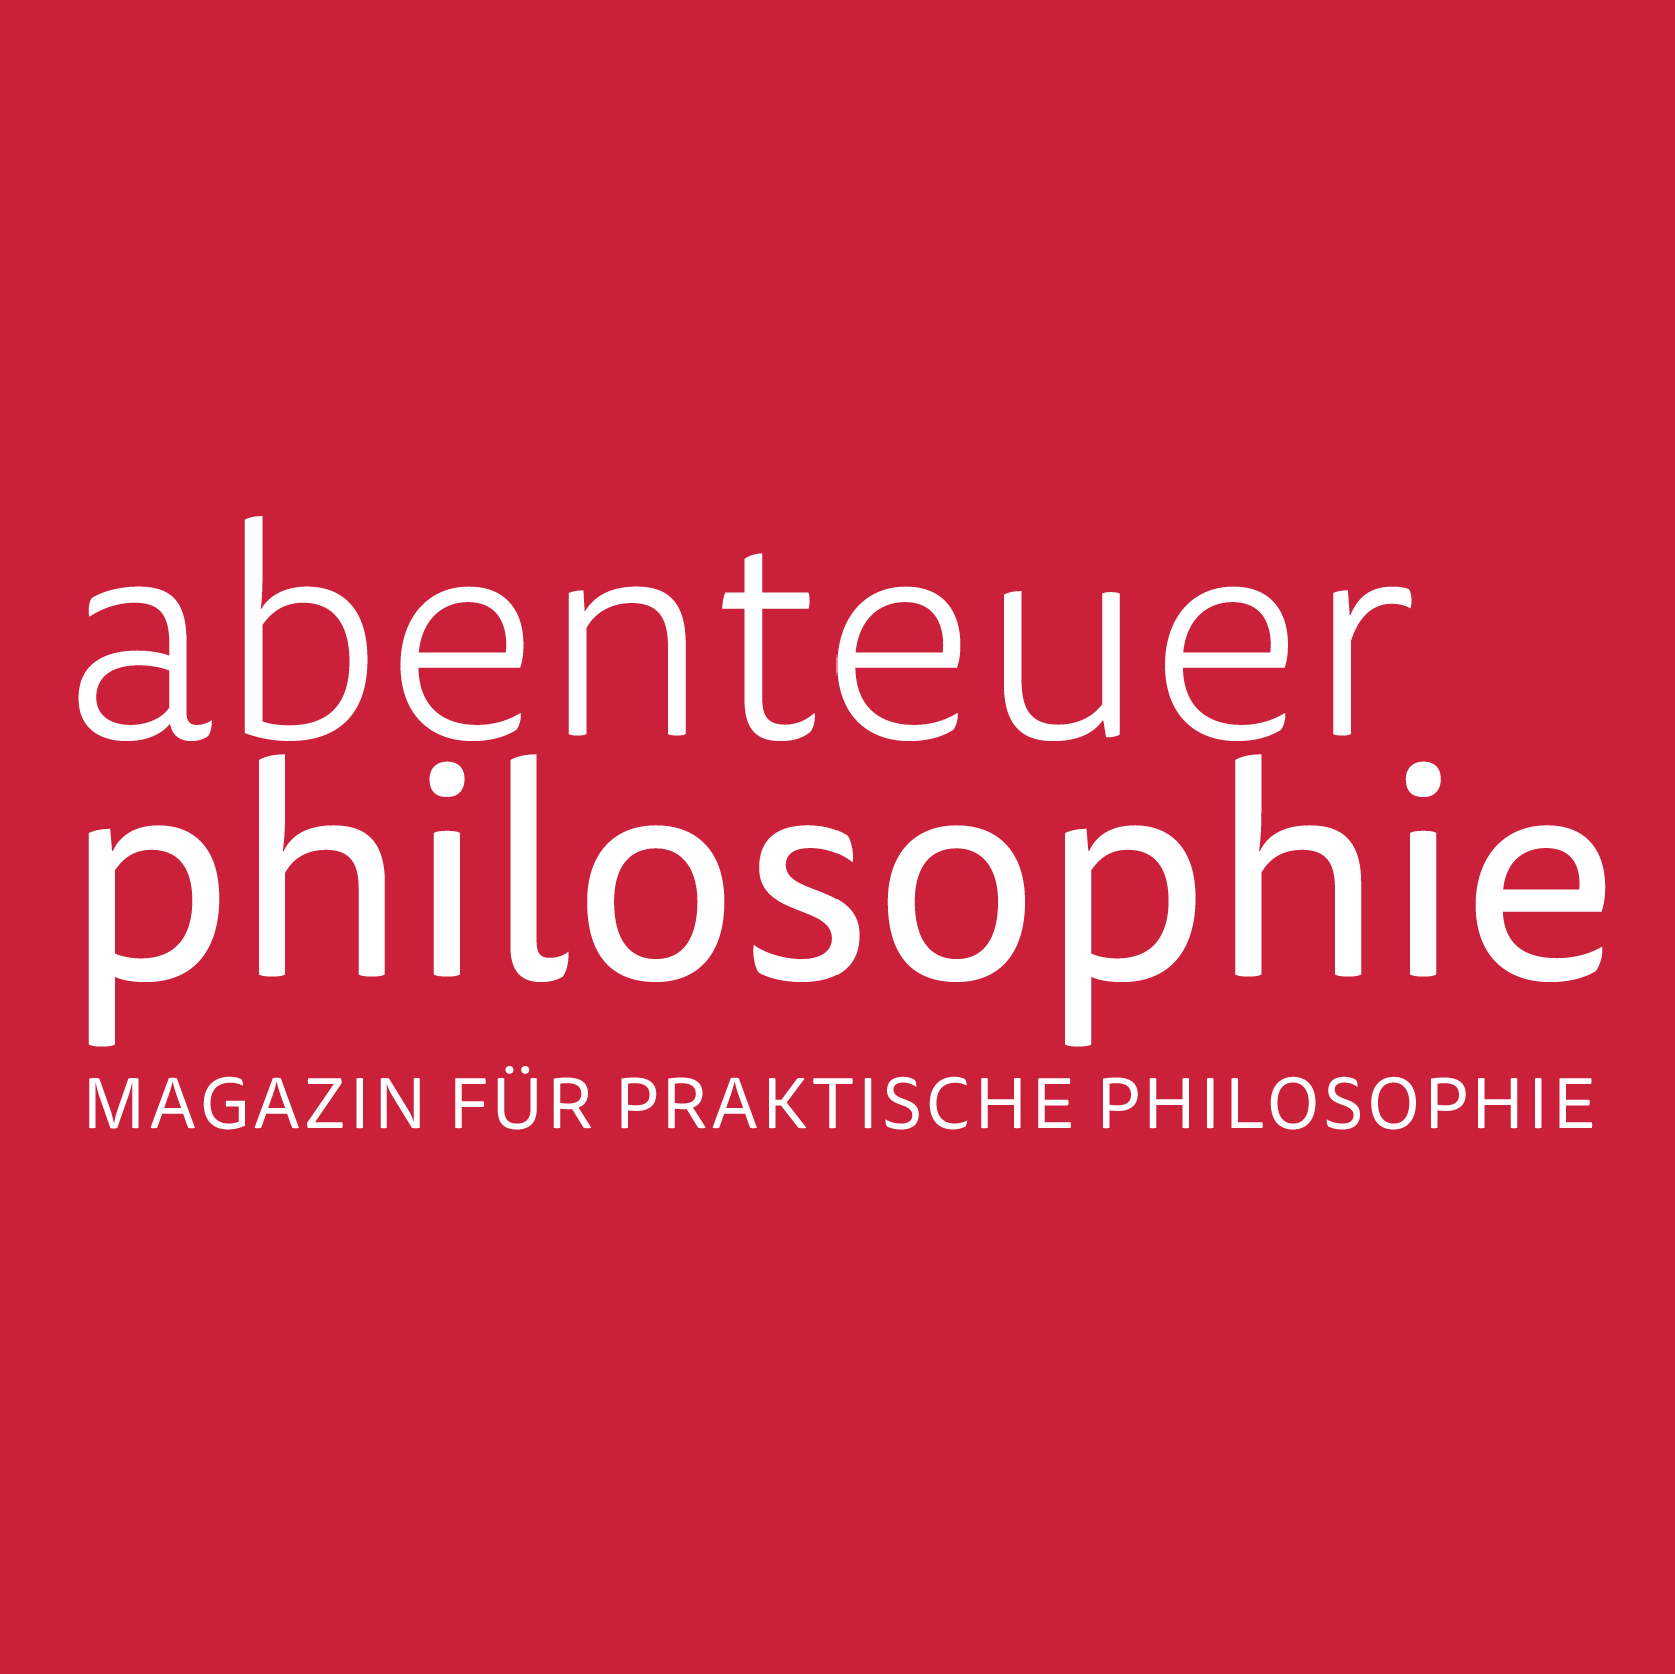 (c) Abenteuer-philosophie.com